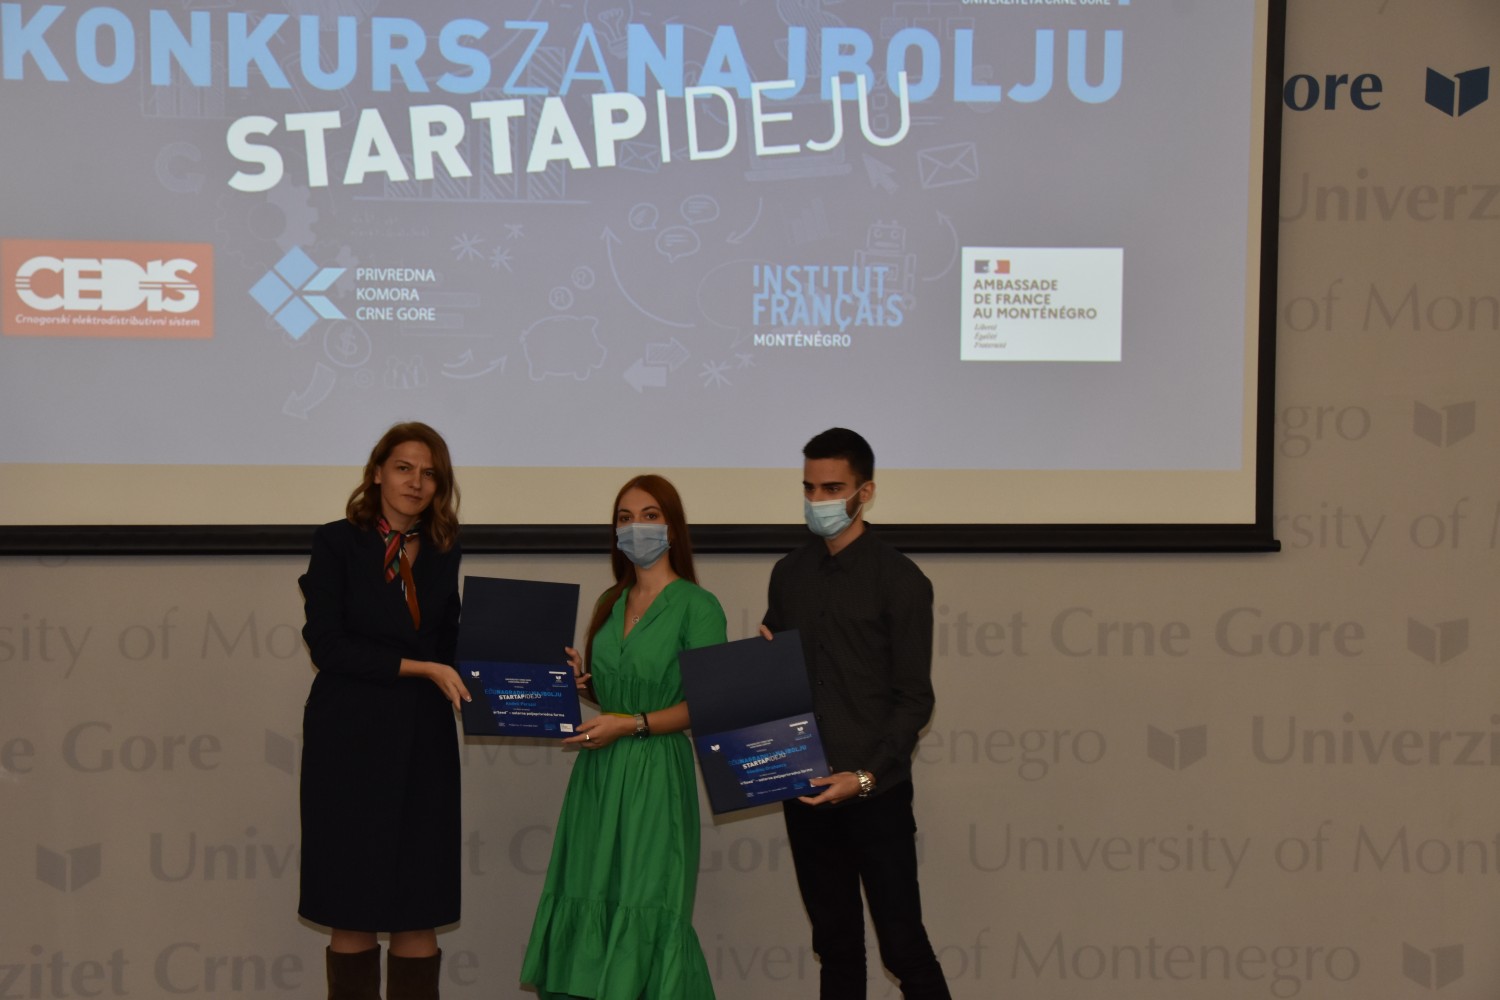 URUČENE NARADE NAJBOLJIMA Svečano uručene nagrade studentima Univerziteta Crne Gore za startap ideje